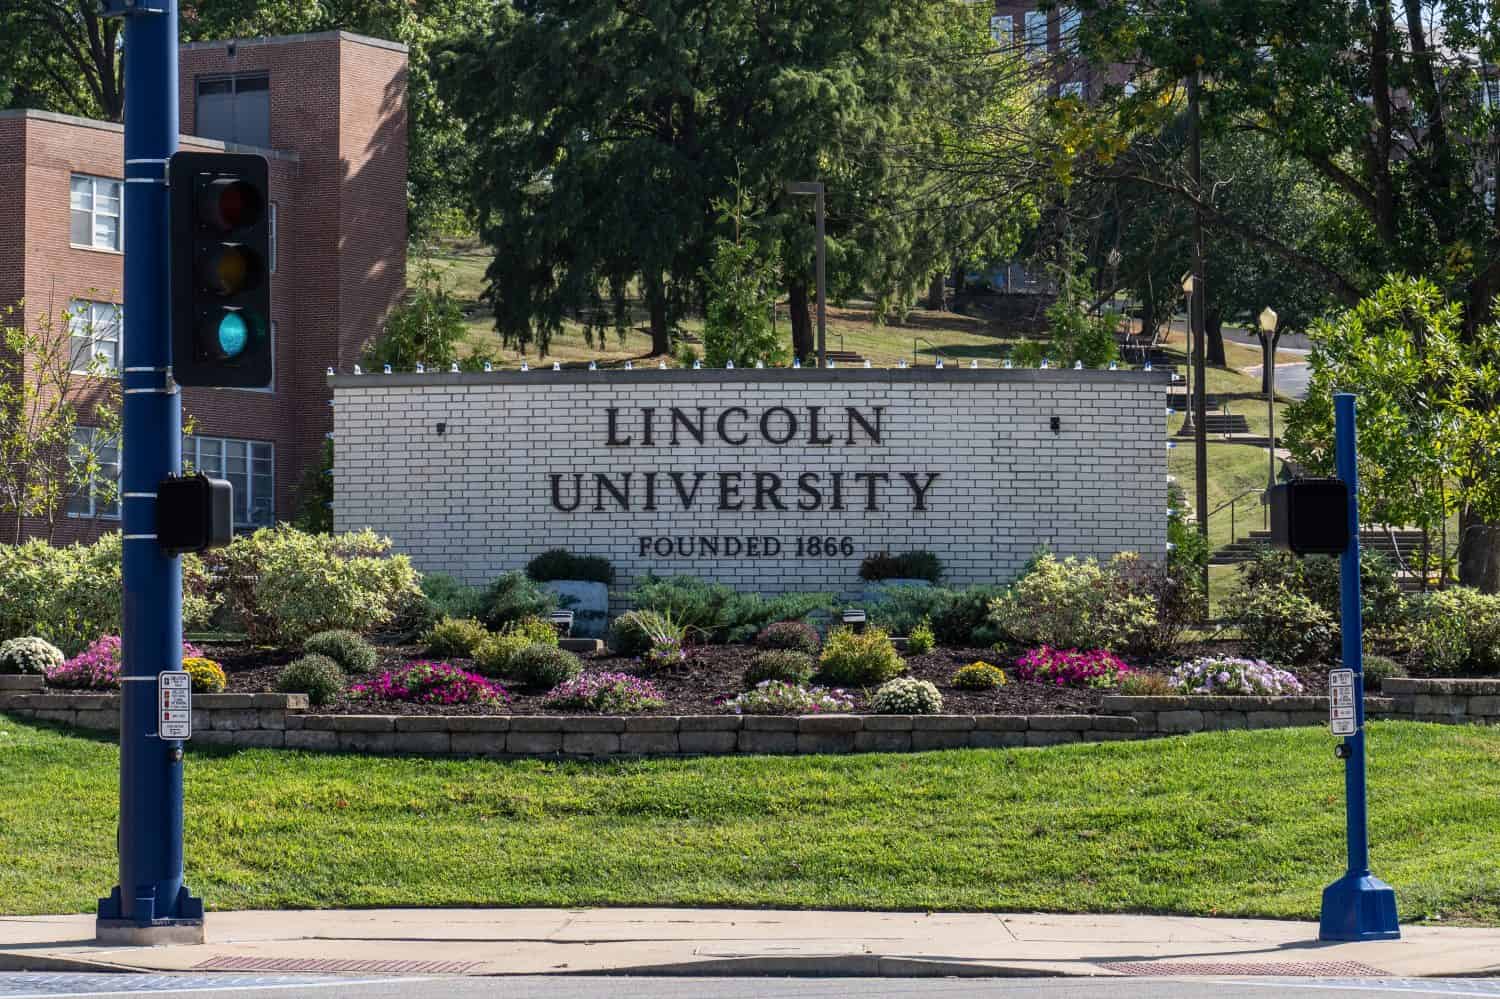 Segno per la Lincoln University di Jefferson City, Missouri.  Originariamente chiamato Lincoln Institute, fu fondato da ex schiavi nel 1866 a beneficio degli afroamericani emancipati.